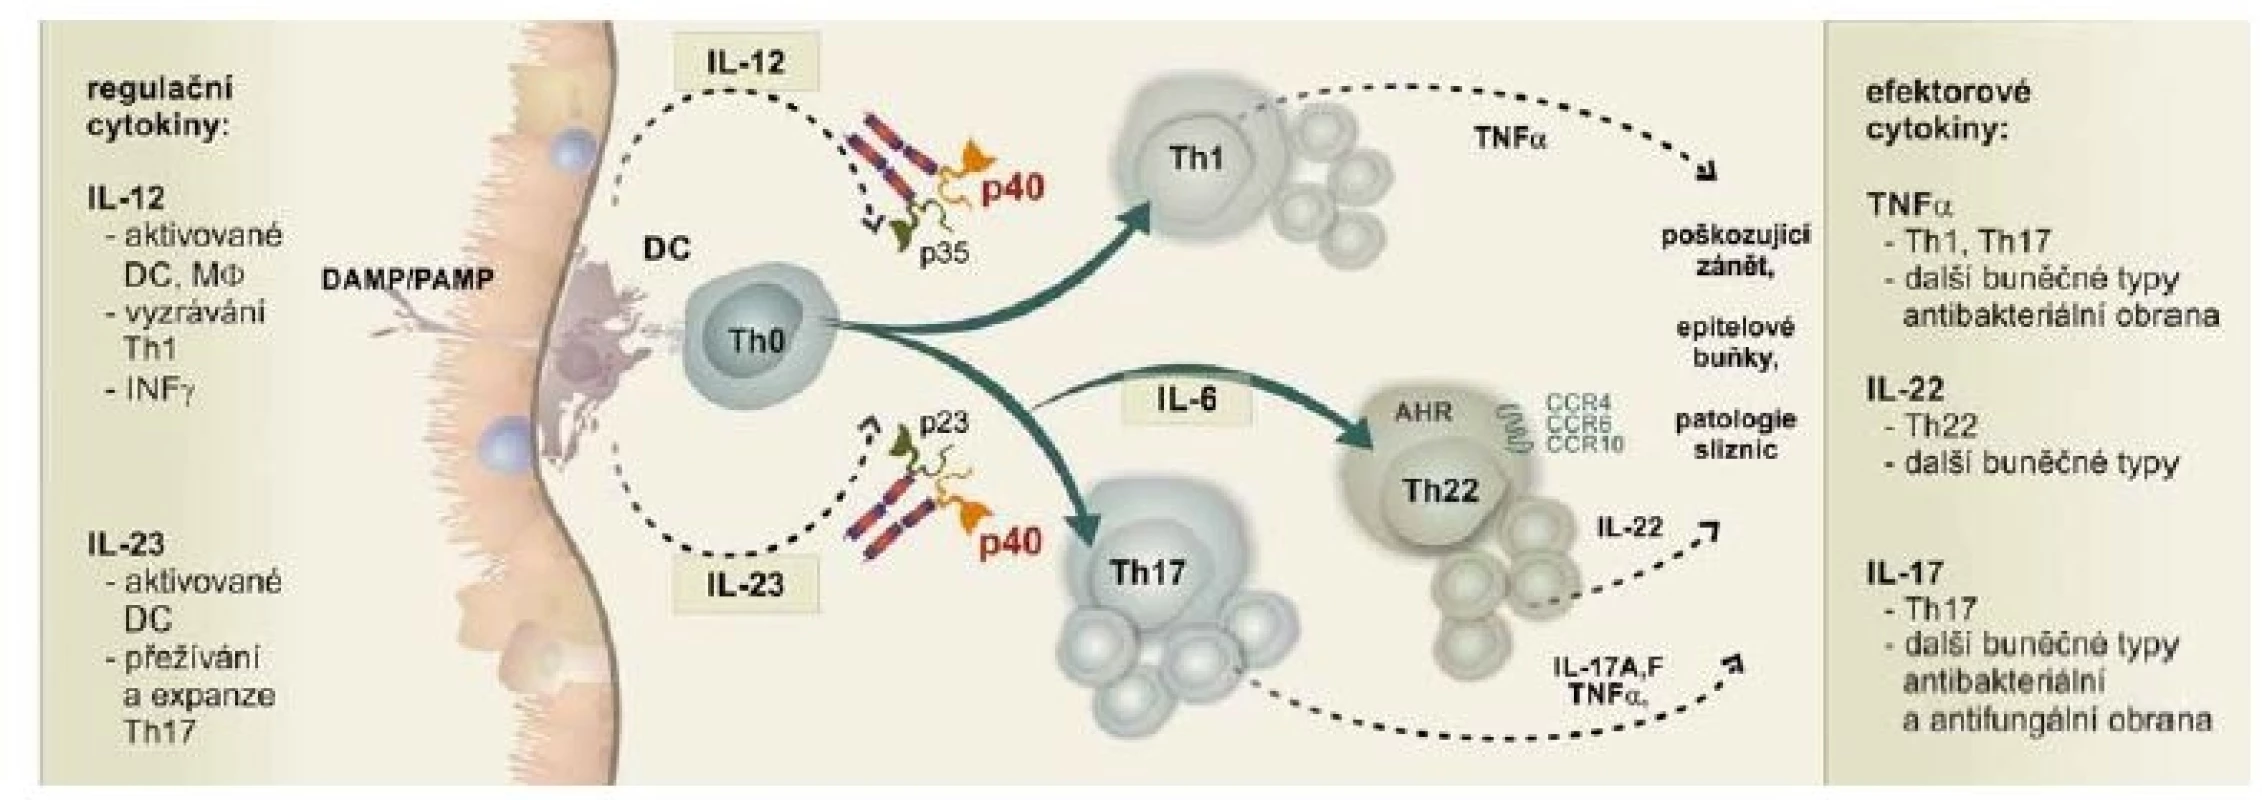 Signální dráha IL-12/IL-23 je klíčová v obranném i poškozujícím zánětu na střevní sliznici.<br>
Fig. 1. The IL-12/IL-23 pathway plays a key role in defensive as well as damaging inflammations of the colon mucosa.